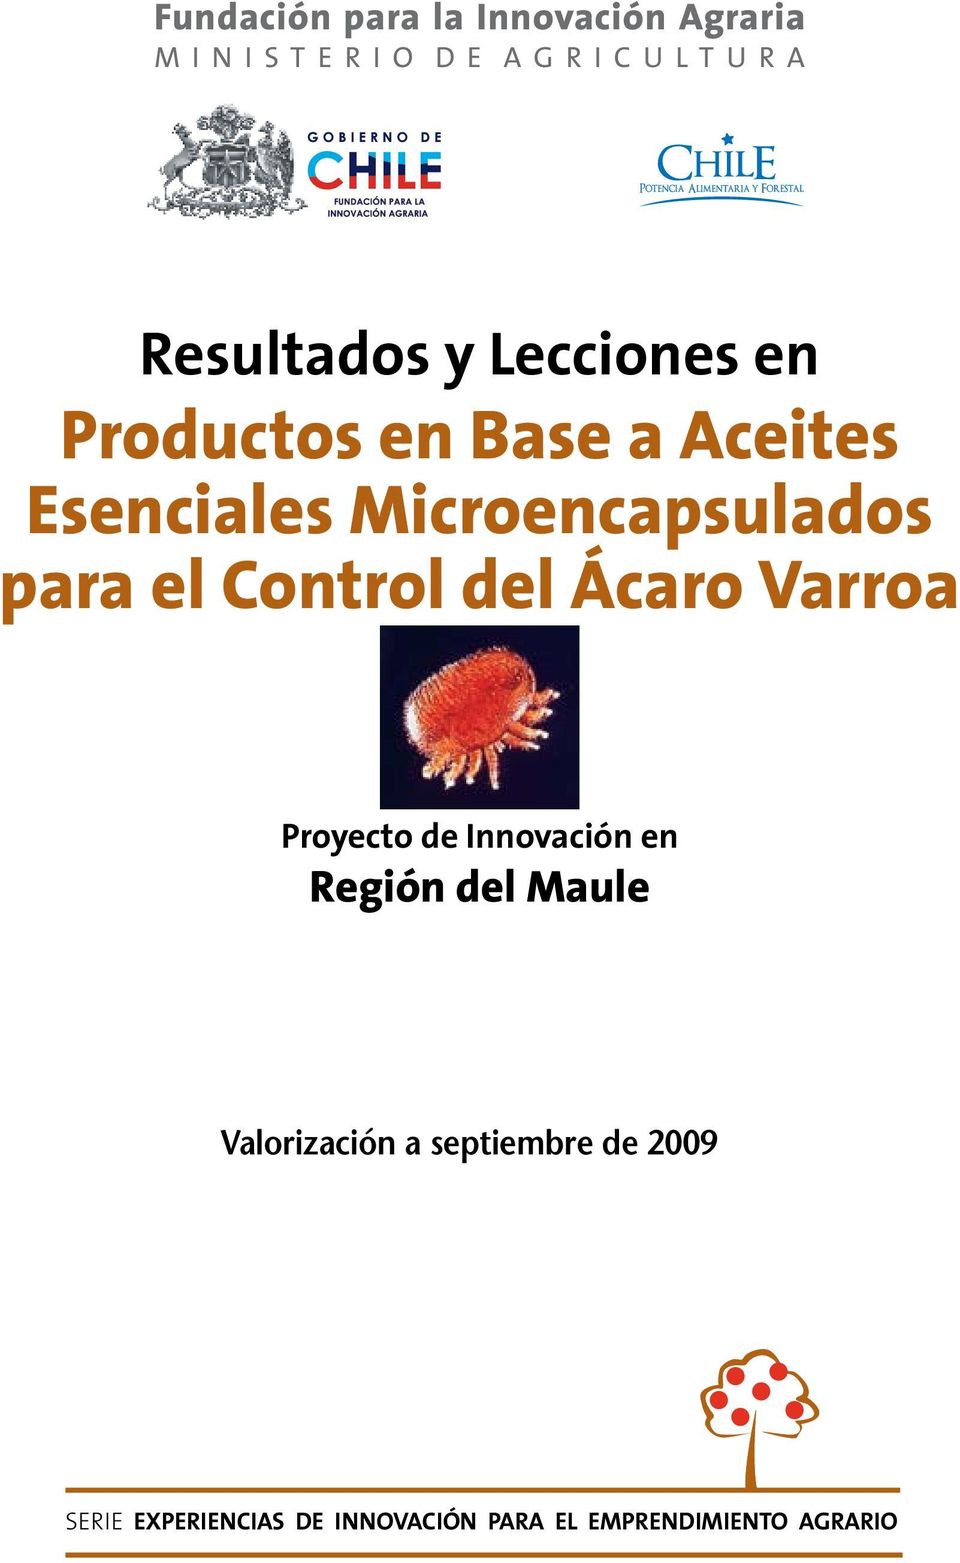 para el Control del Ácaro Varroa Proyecto de Innovación en Región del Maule